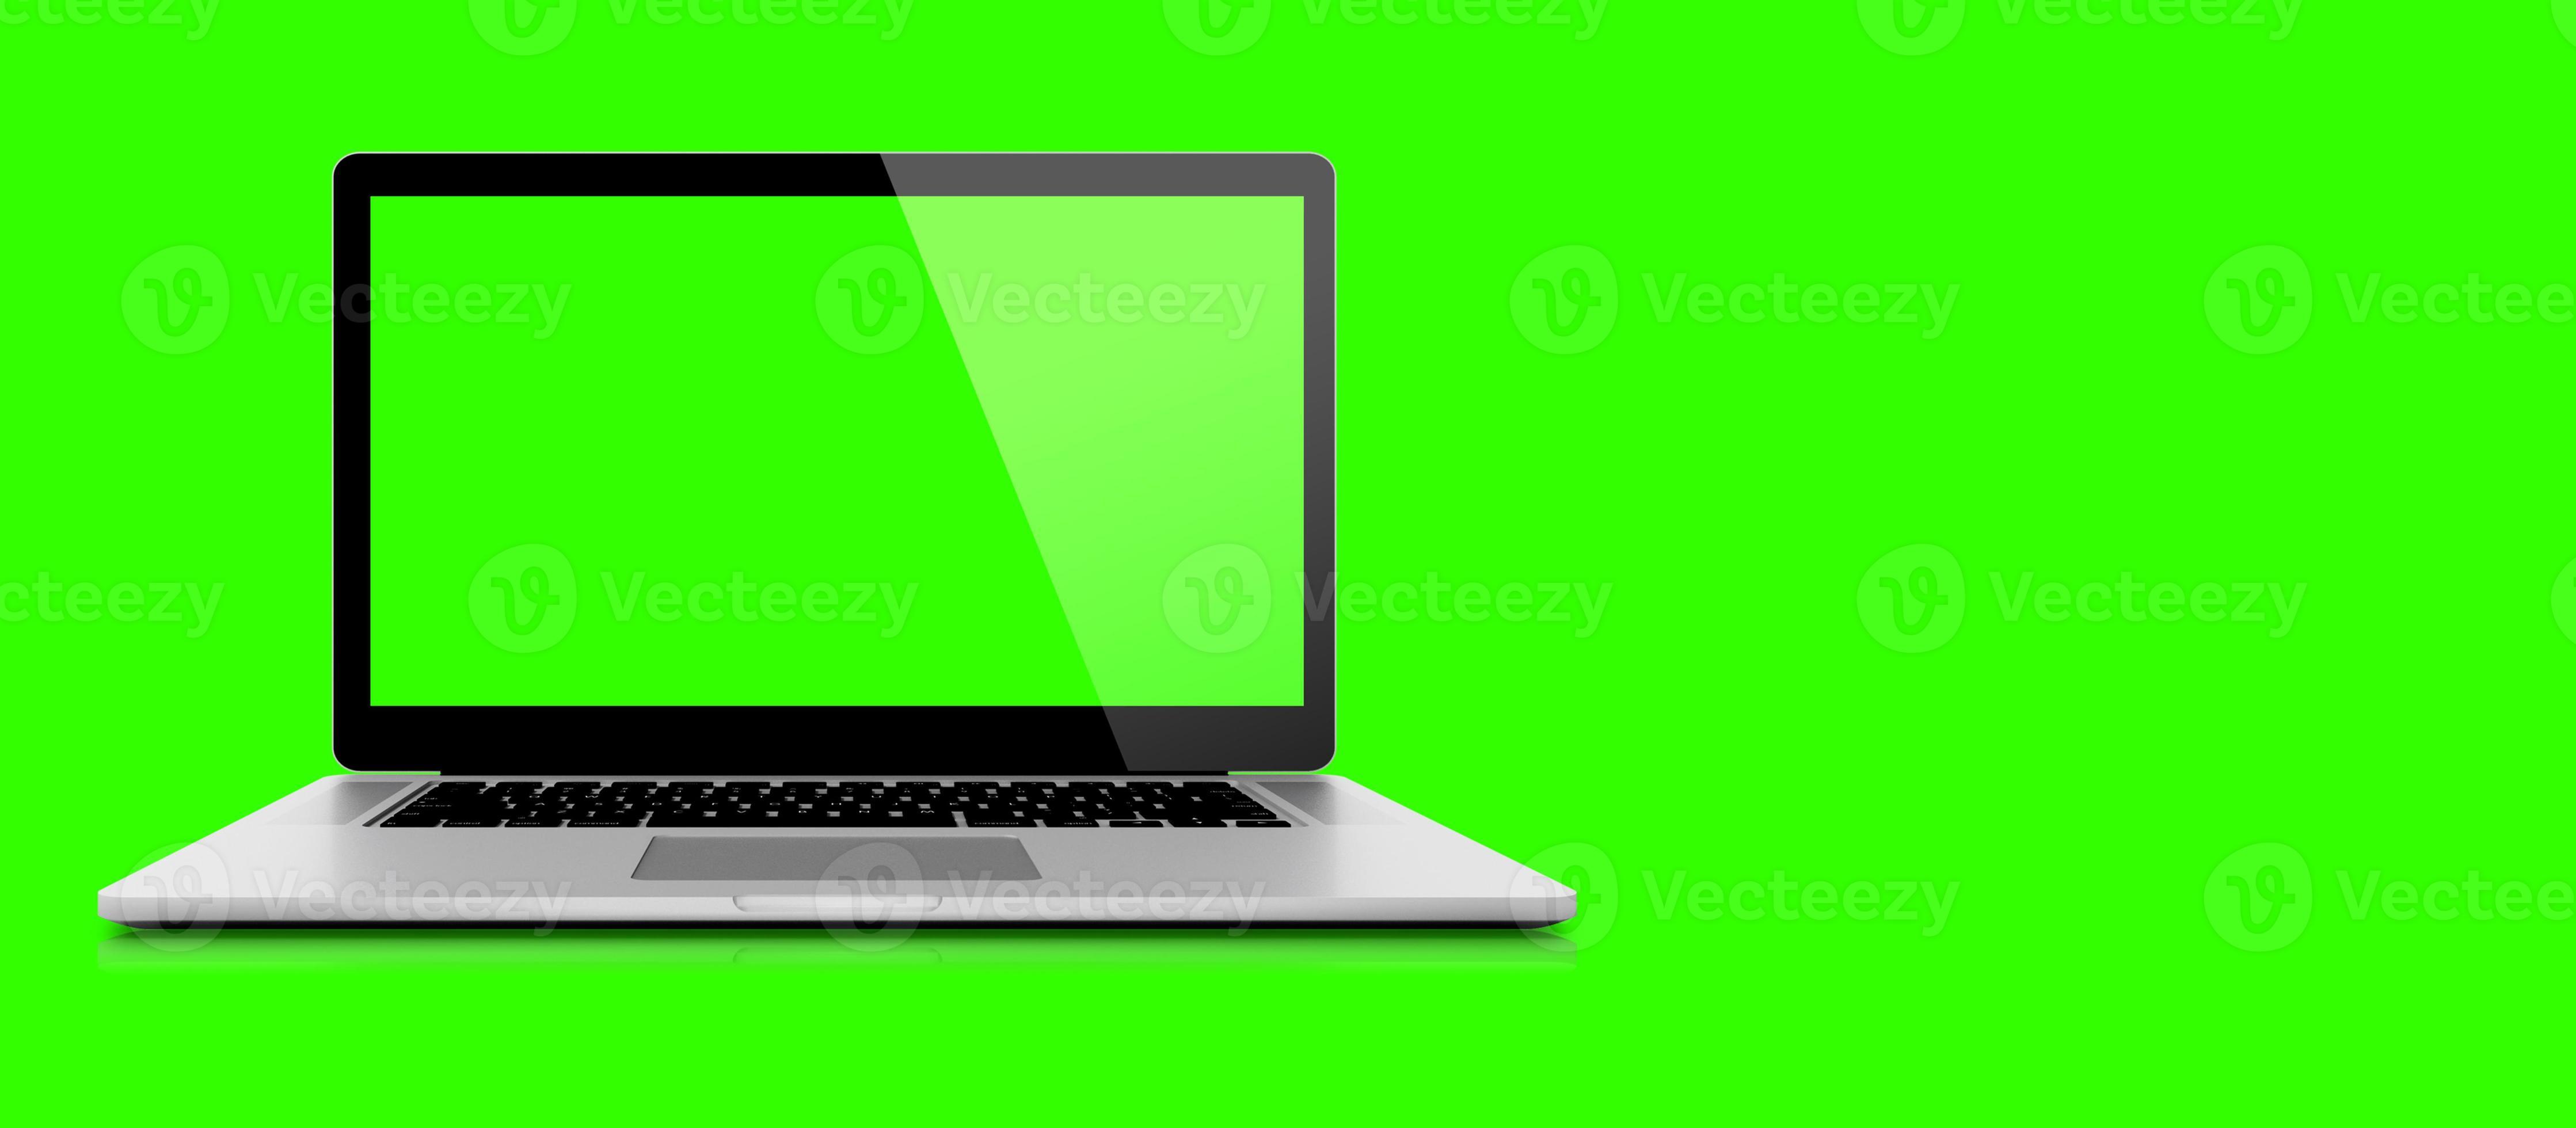 Laptop trắng: Bạn đang tìm kiếm một chiếc laptop trắng trang nhã và sang trọng? Chúng tôi có những sản phẩm laptop trắng đa dạng với nhiều cấu hình khác nhau. Chúng tôi cam kết với bạn rằng sản phẩm của chúng tôi đảm bảo chất lượng và giá cả hợp lý để bạn có thể trải nghiệm những tính năng tuyệt vời của laptop.